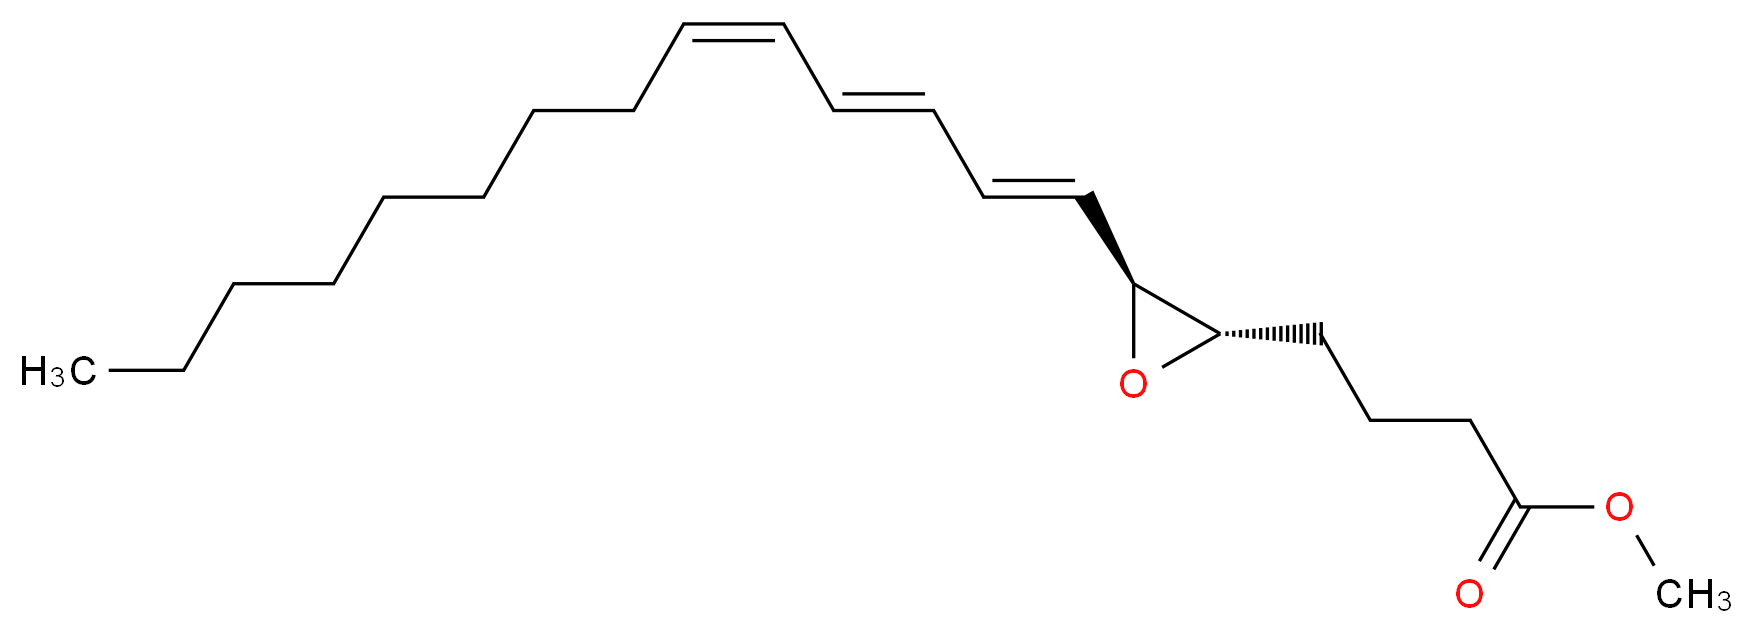 methyl 4-[(2S,3S)-3-[(1E,3E,5Z)-tetradeca-1,3,5-trien-1-yl]oxiran-2-yl]butanoate_分子结构_CAS_83851-38-1